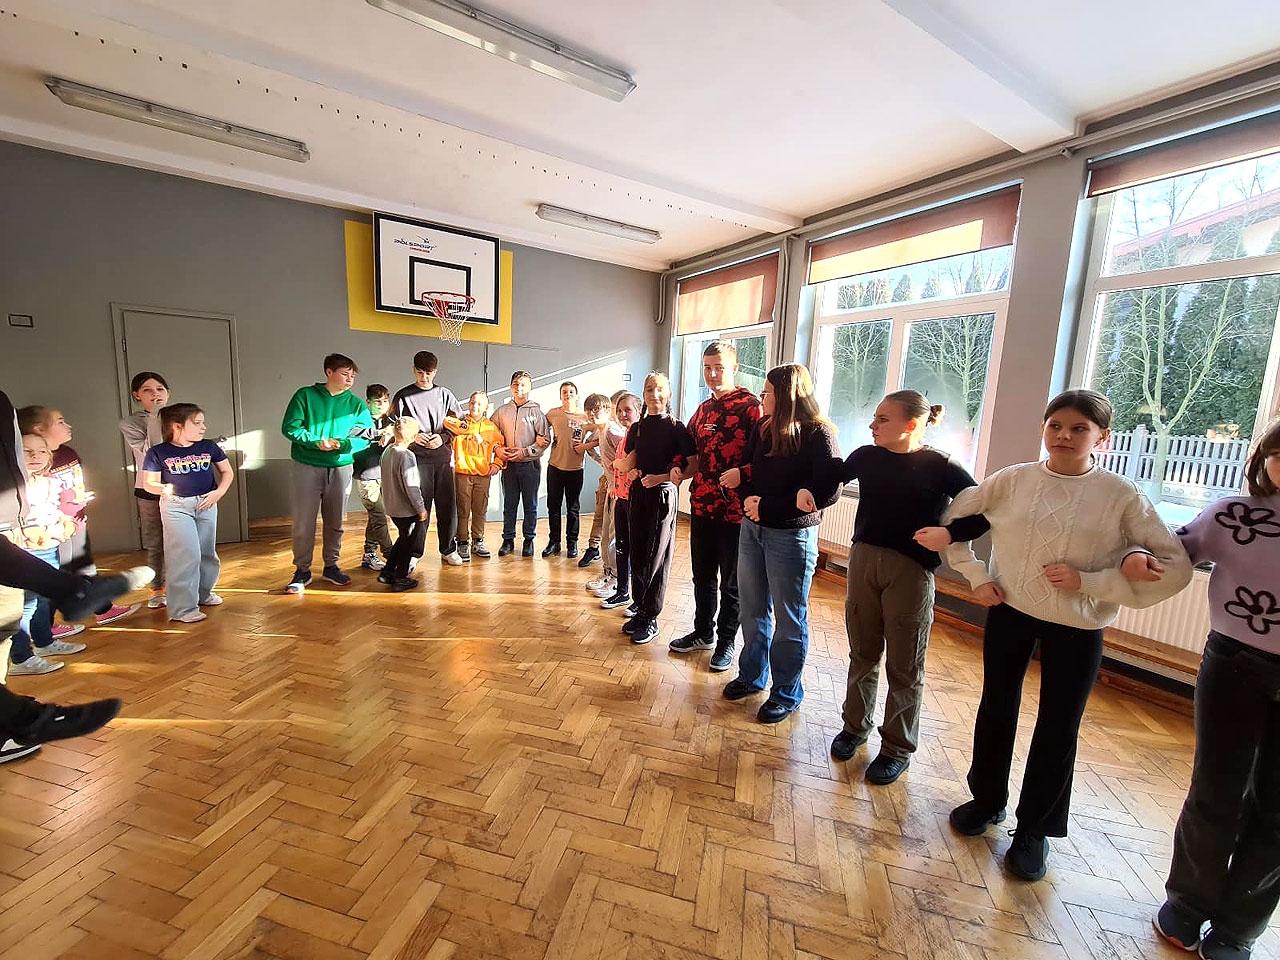 W Cisewie maja przerwę na taniec! Aktywne zajęcia na sali gimnastycznej - fot.: Szkoła Podstawowa w Cisewie